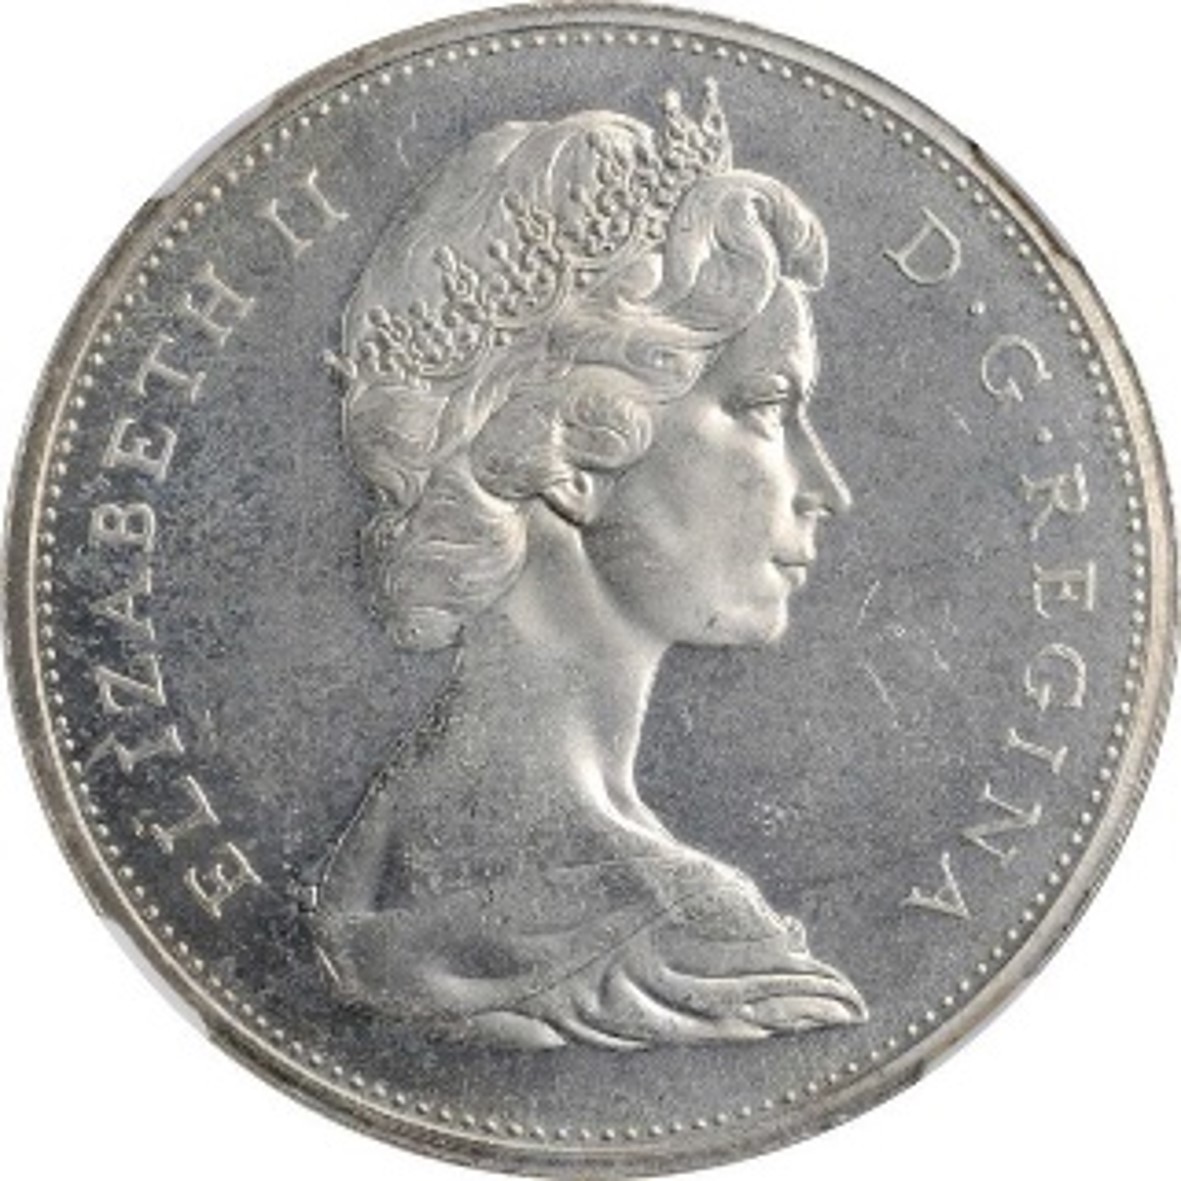 カナダ エリザベス2世(1952-) 1ドル銀貨 1966 オタワ鋳 KM64.1 NGC